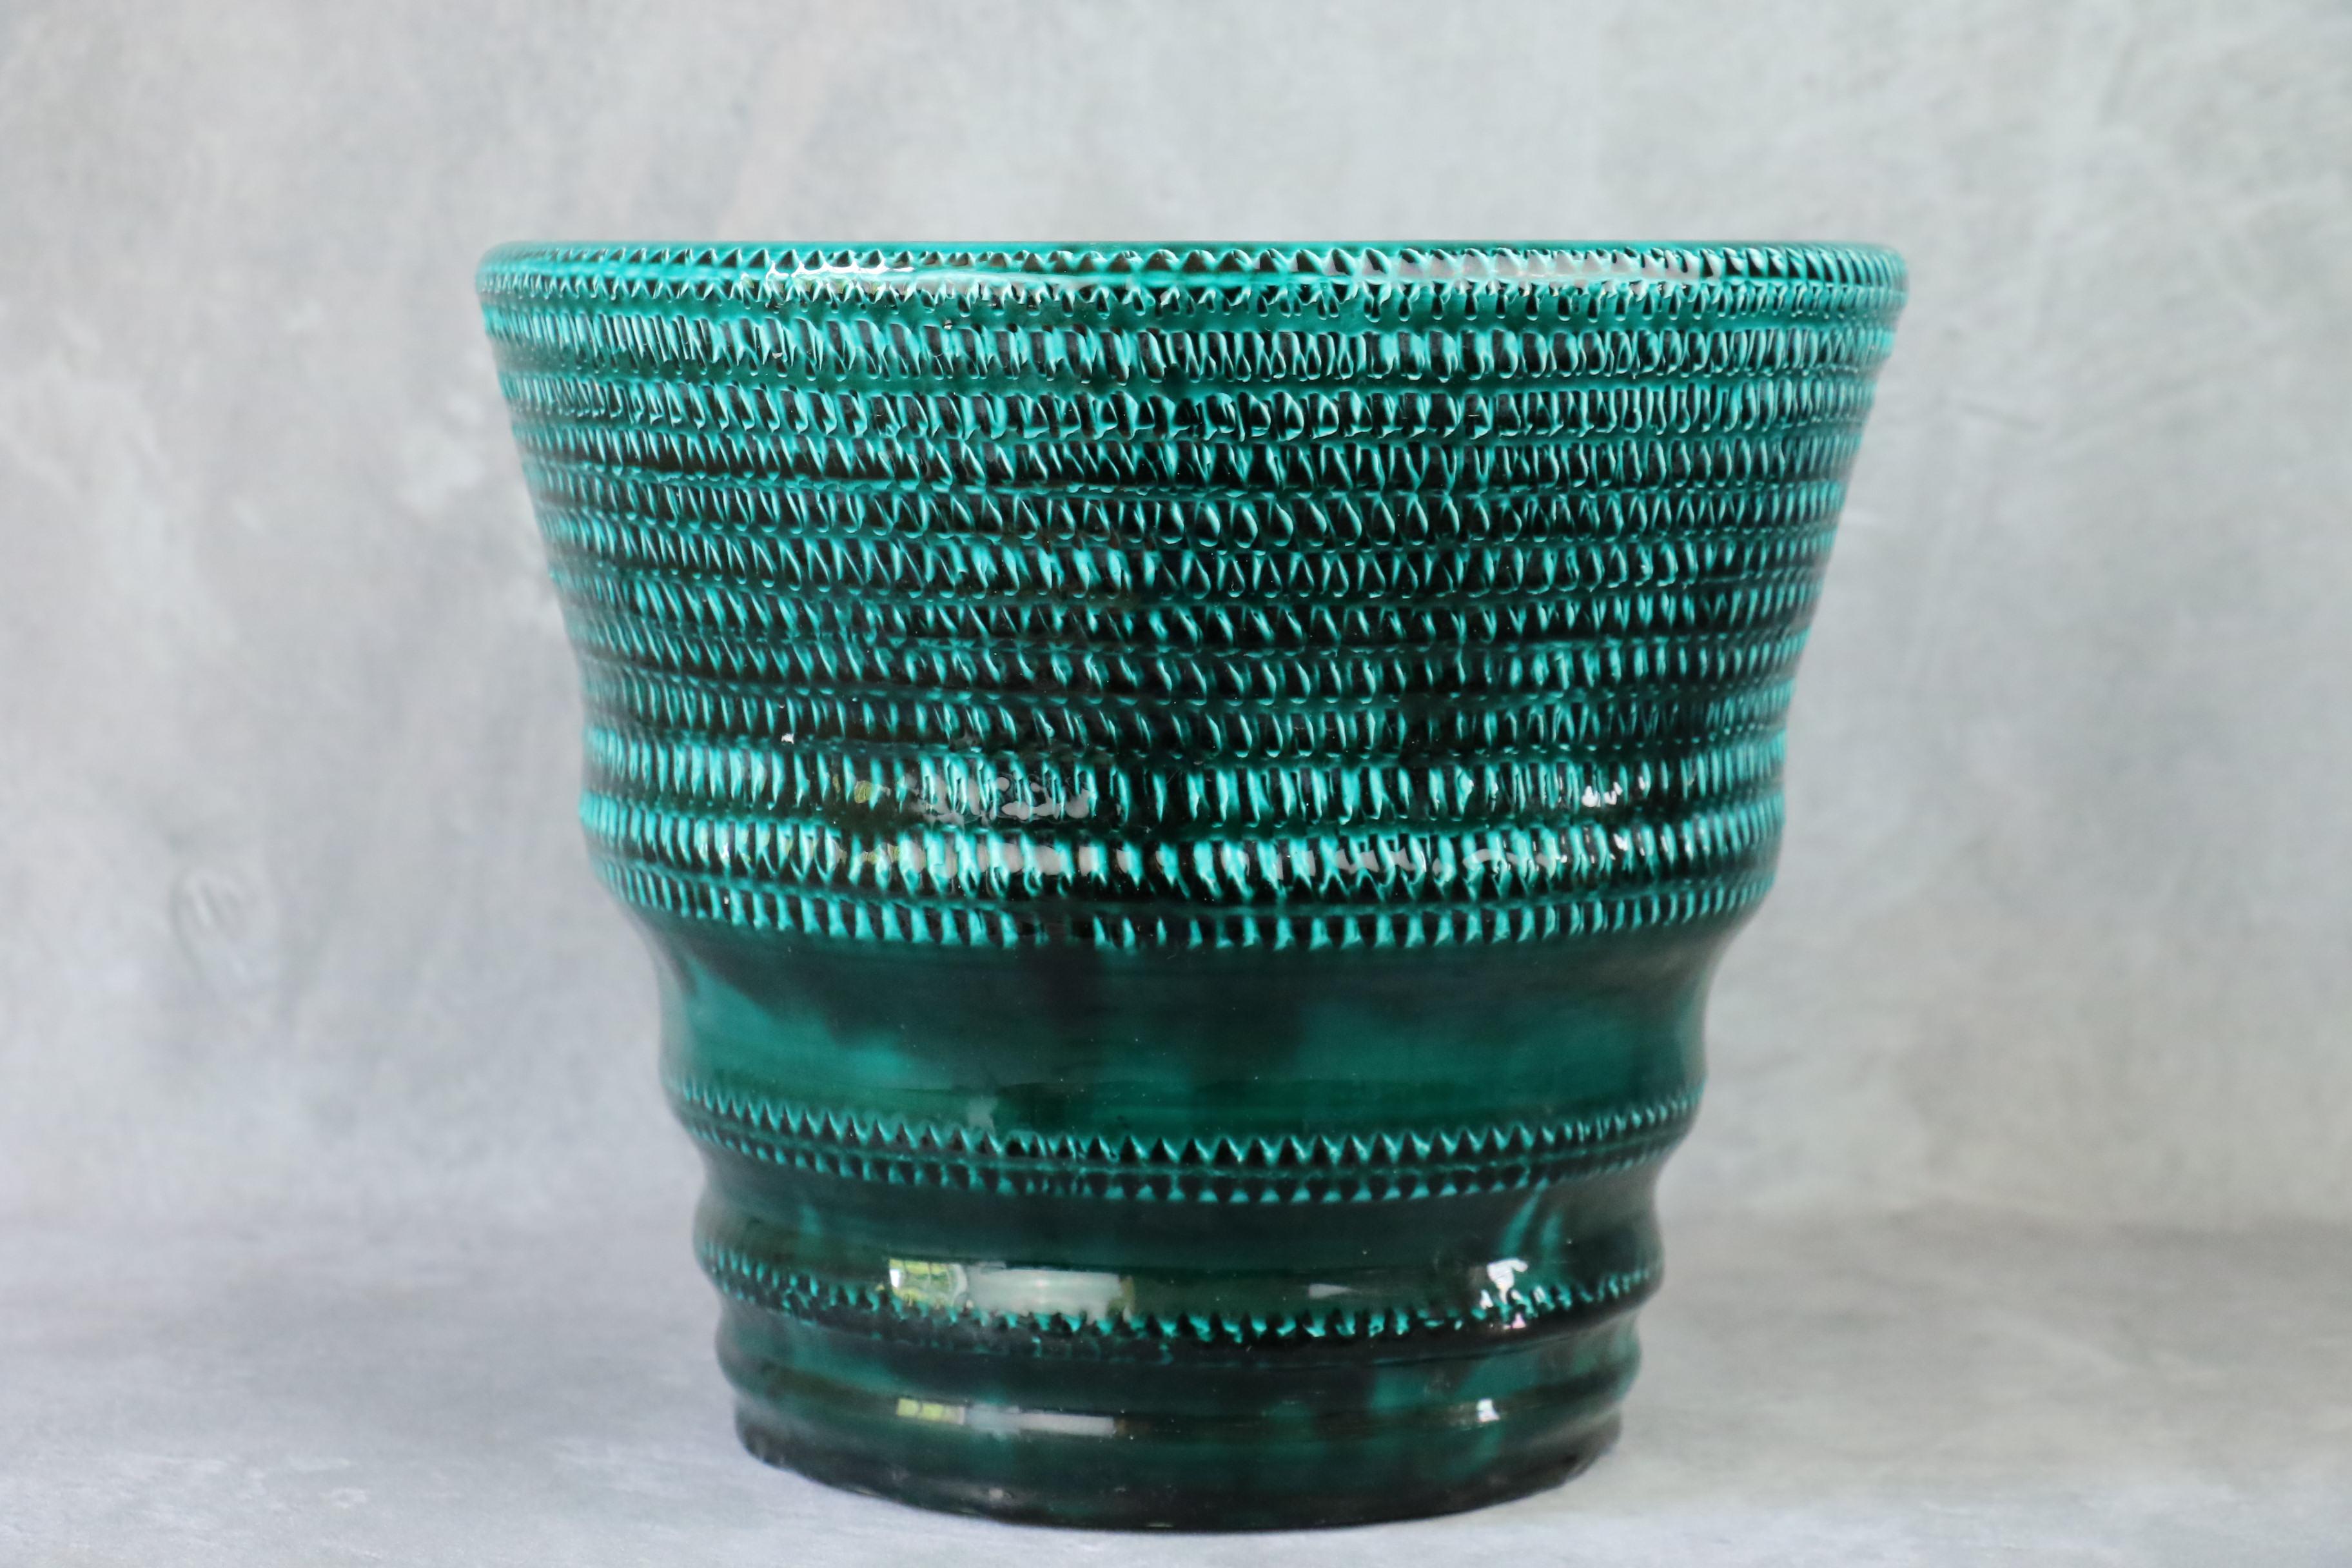 Grand vase à corne en céramique émaillée verte par Accolay - 1960 - Céramique française

Très beau travail d'émaillage pour ce vase réalisé par les potiers d'Accolay vers 1960. La glaçure est d'une couleur vert sapin texturée. Une très belle pièce.